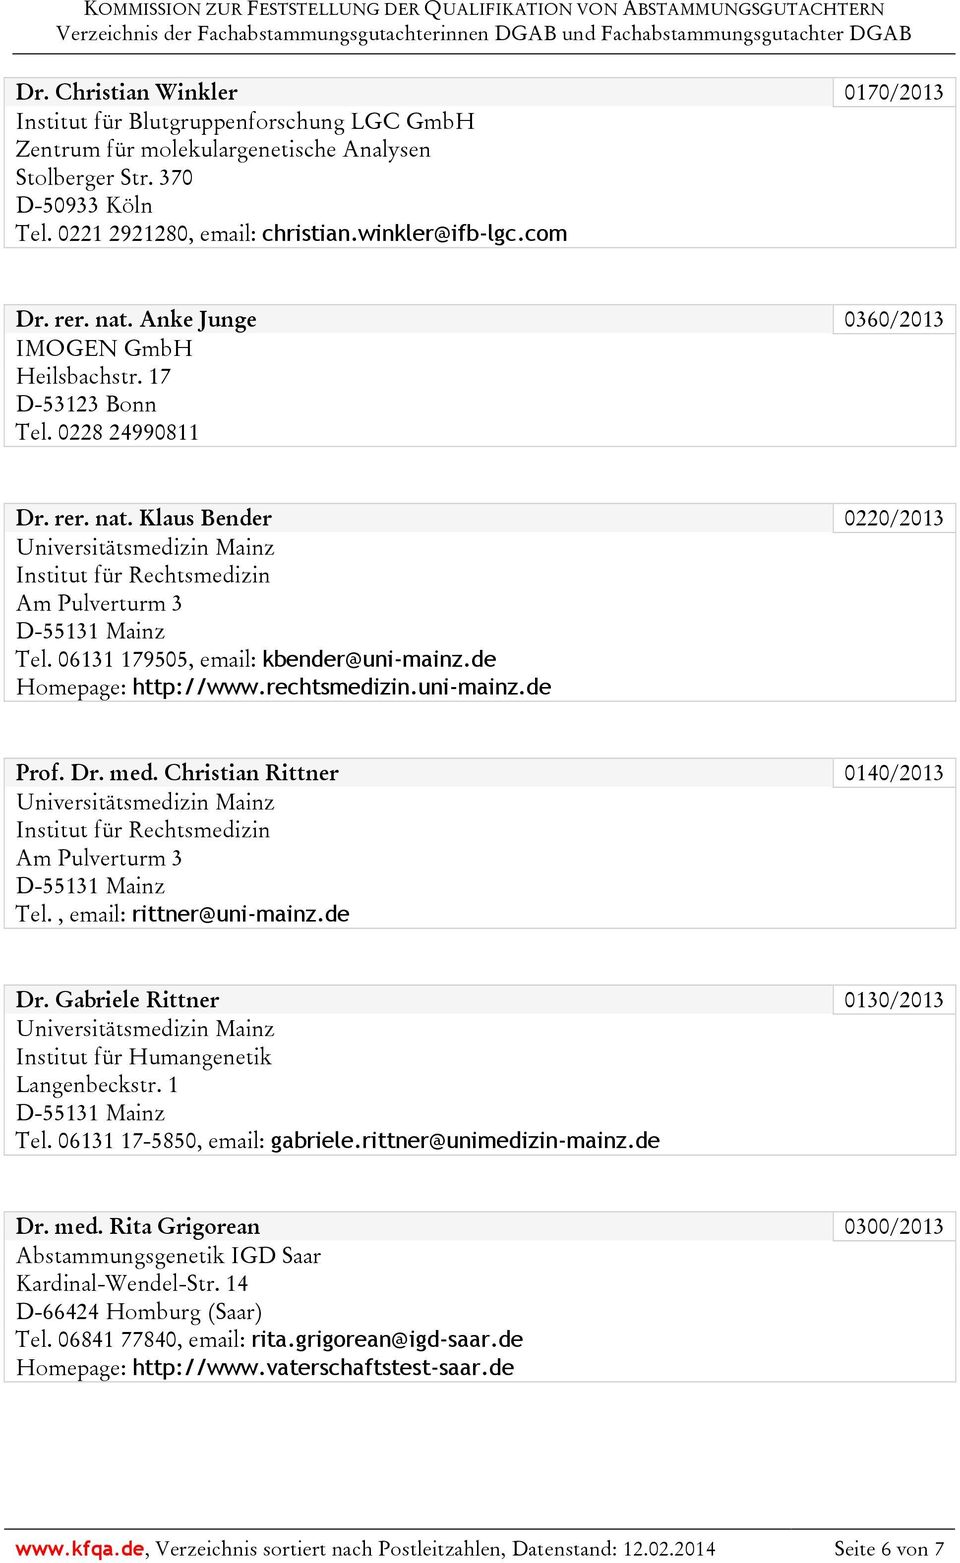 06131 179505, email: kbender@uni-mainz.de Homepage: http://www.rechtsmedizin.uni-mainz.de Prof. Dr. med. Christian Rittner 0140/2013 Universitätsmedizin Mainz Am Pulverturm 3 D-55131 Mainz Tel.